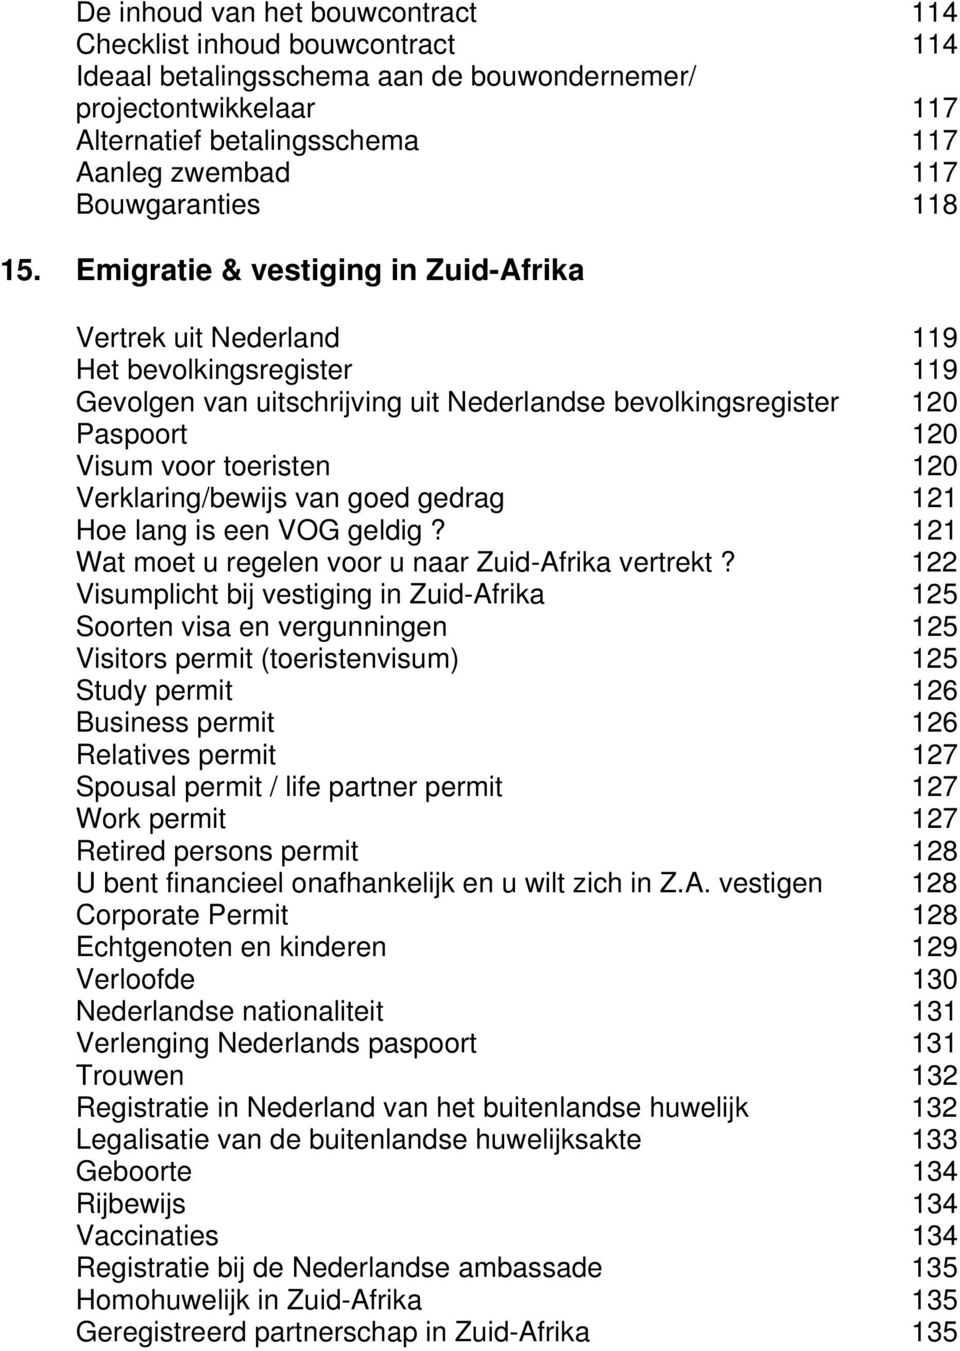 Emigratie & vestiging in Zuid-Afrika Vertrek uit Nederland 119 Het bevolkingsregister 119 Gevolgen van uitschrijving uit Nederlandse bevolkingsregister 120 Paspoort 120 Visum voor toeristen 120